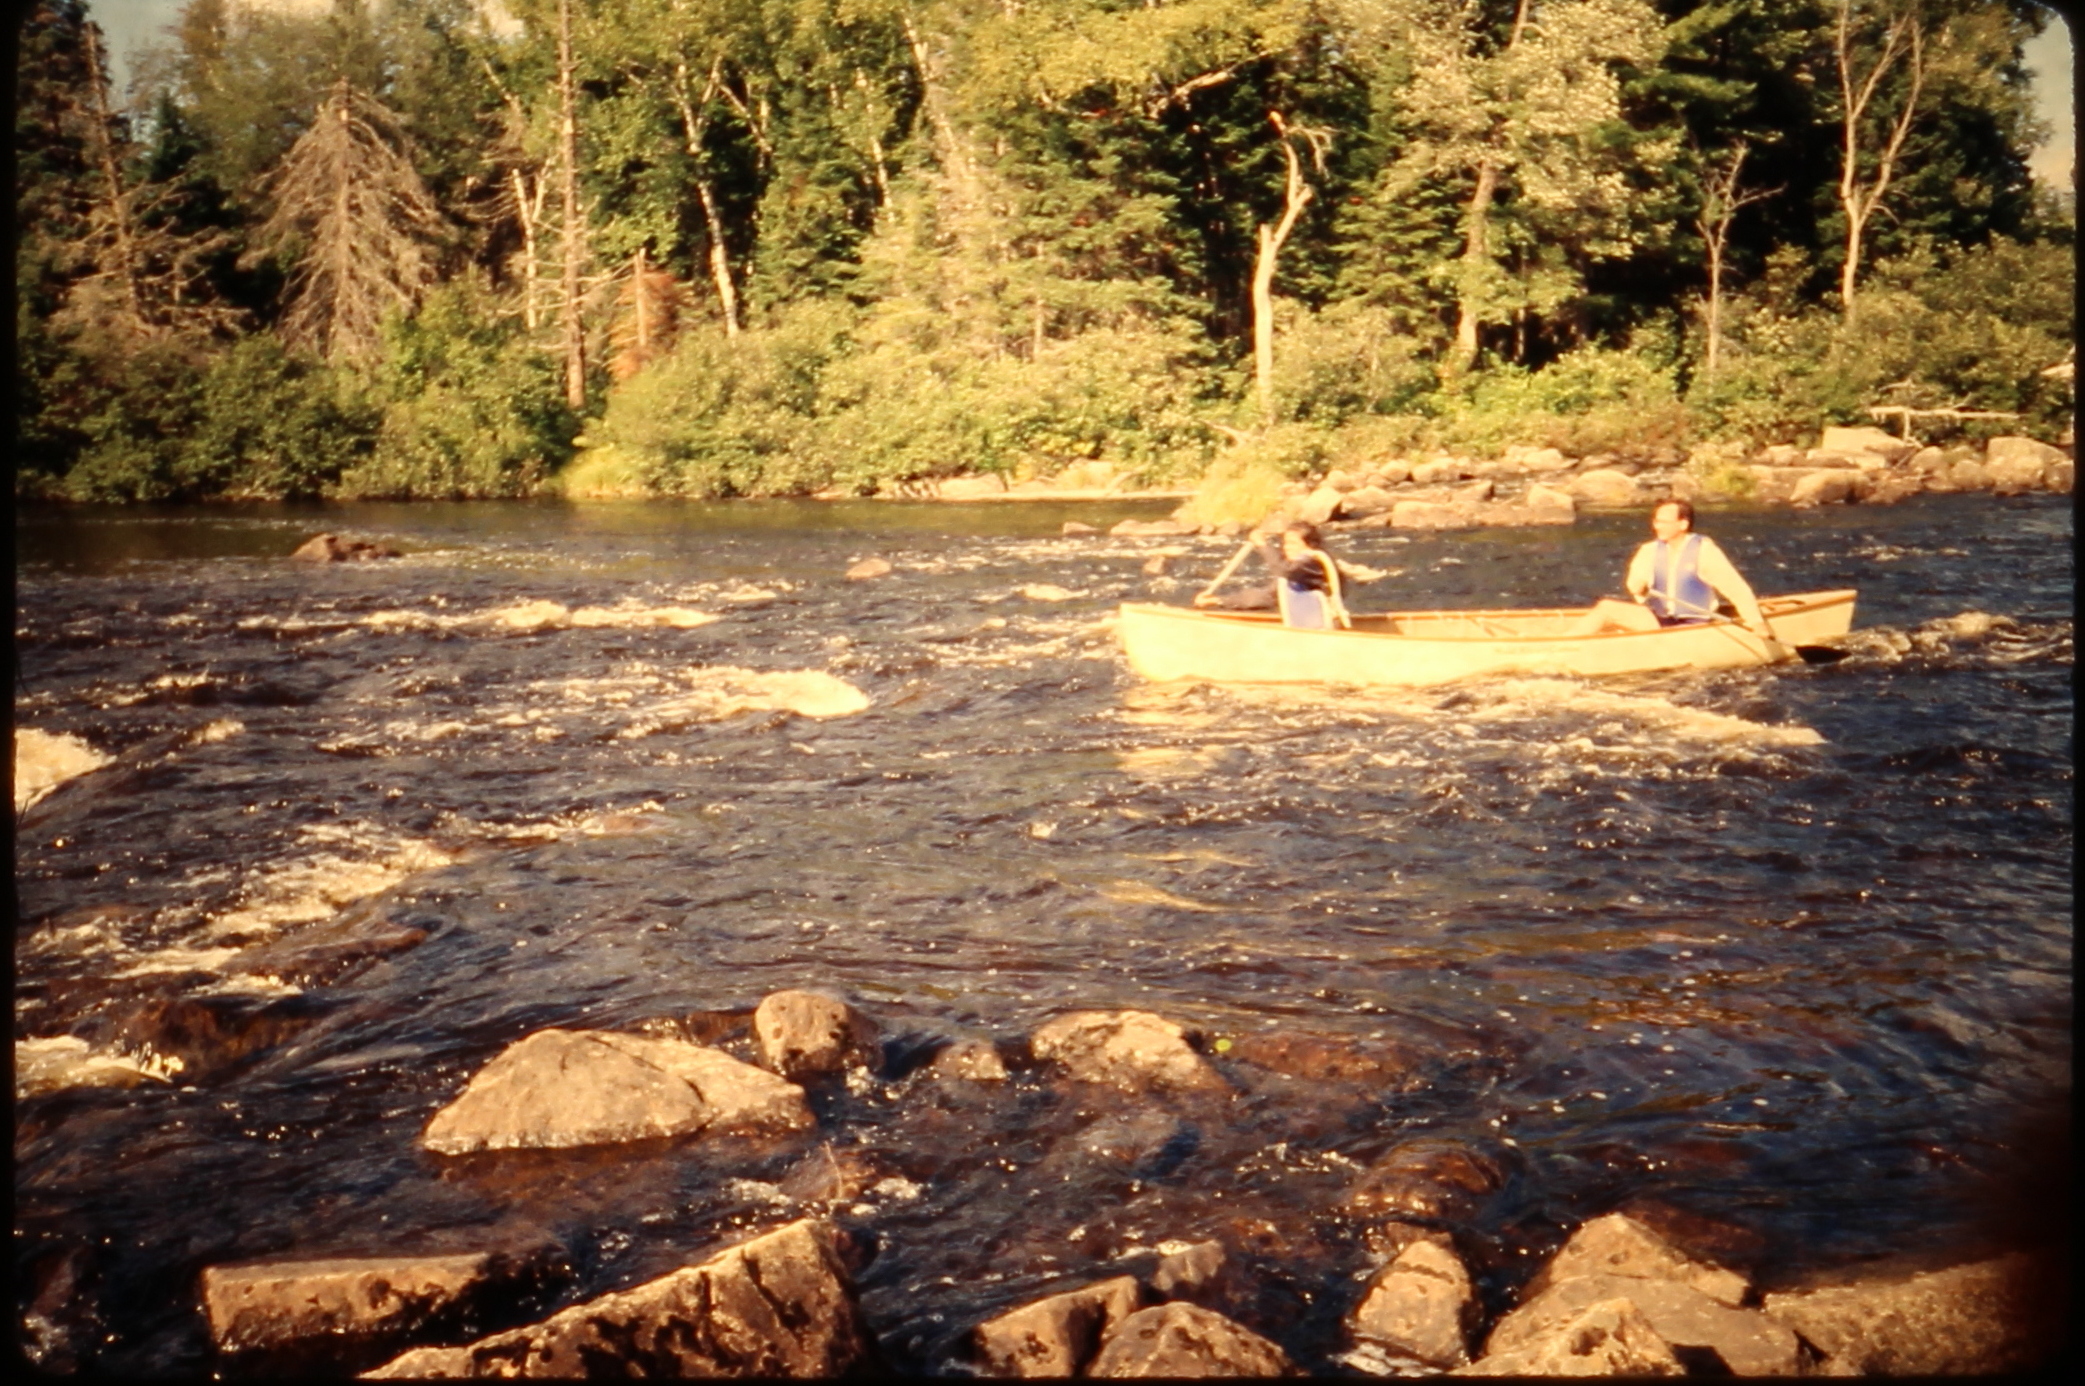 19890903.05 - USA ME -- MooseRiver - Lakshmi Jerry - Moose River Rapids 2 - MB01T01B11S05.JPG